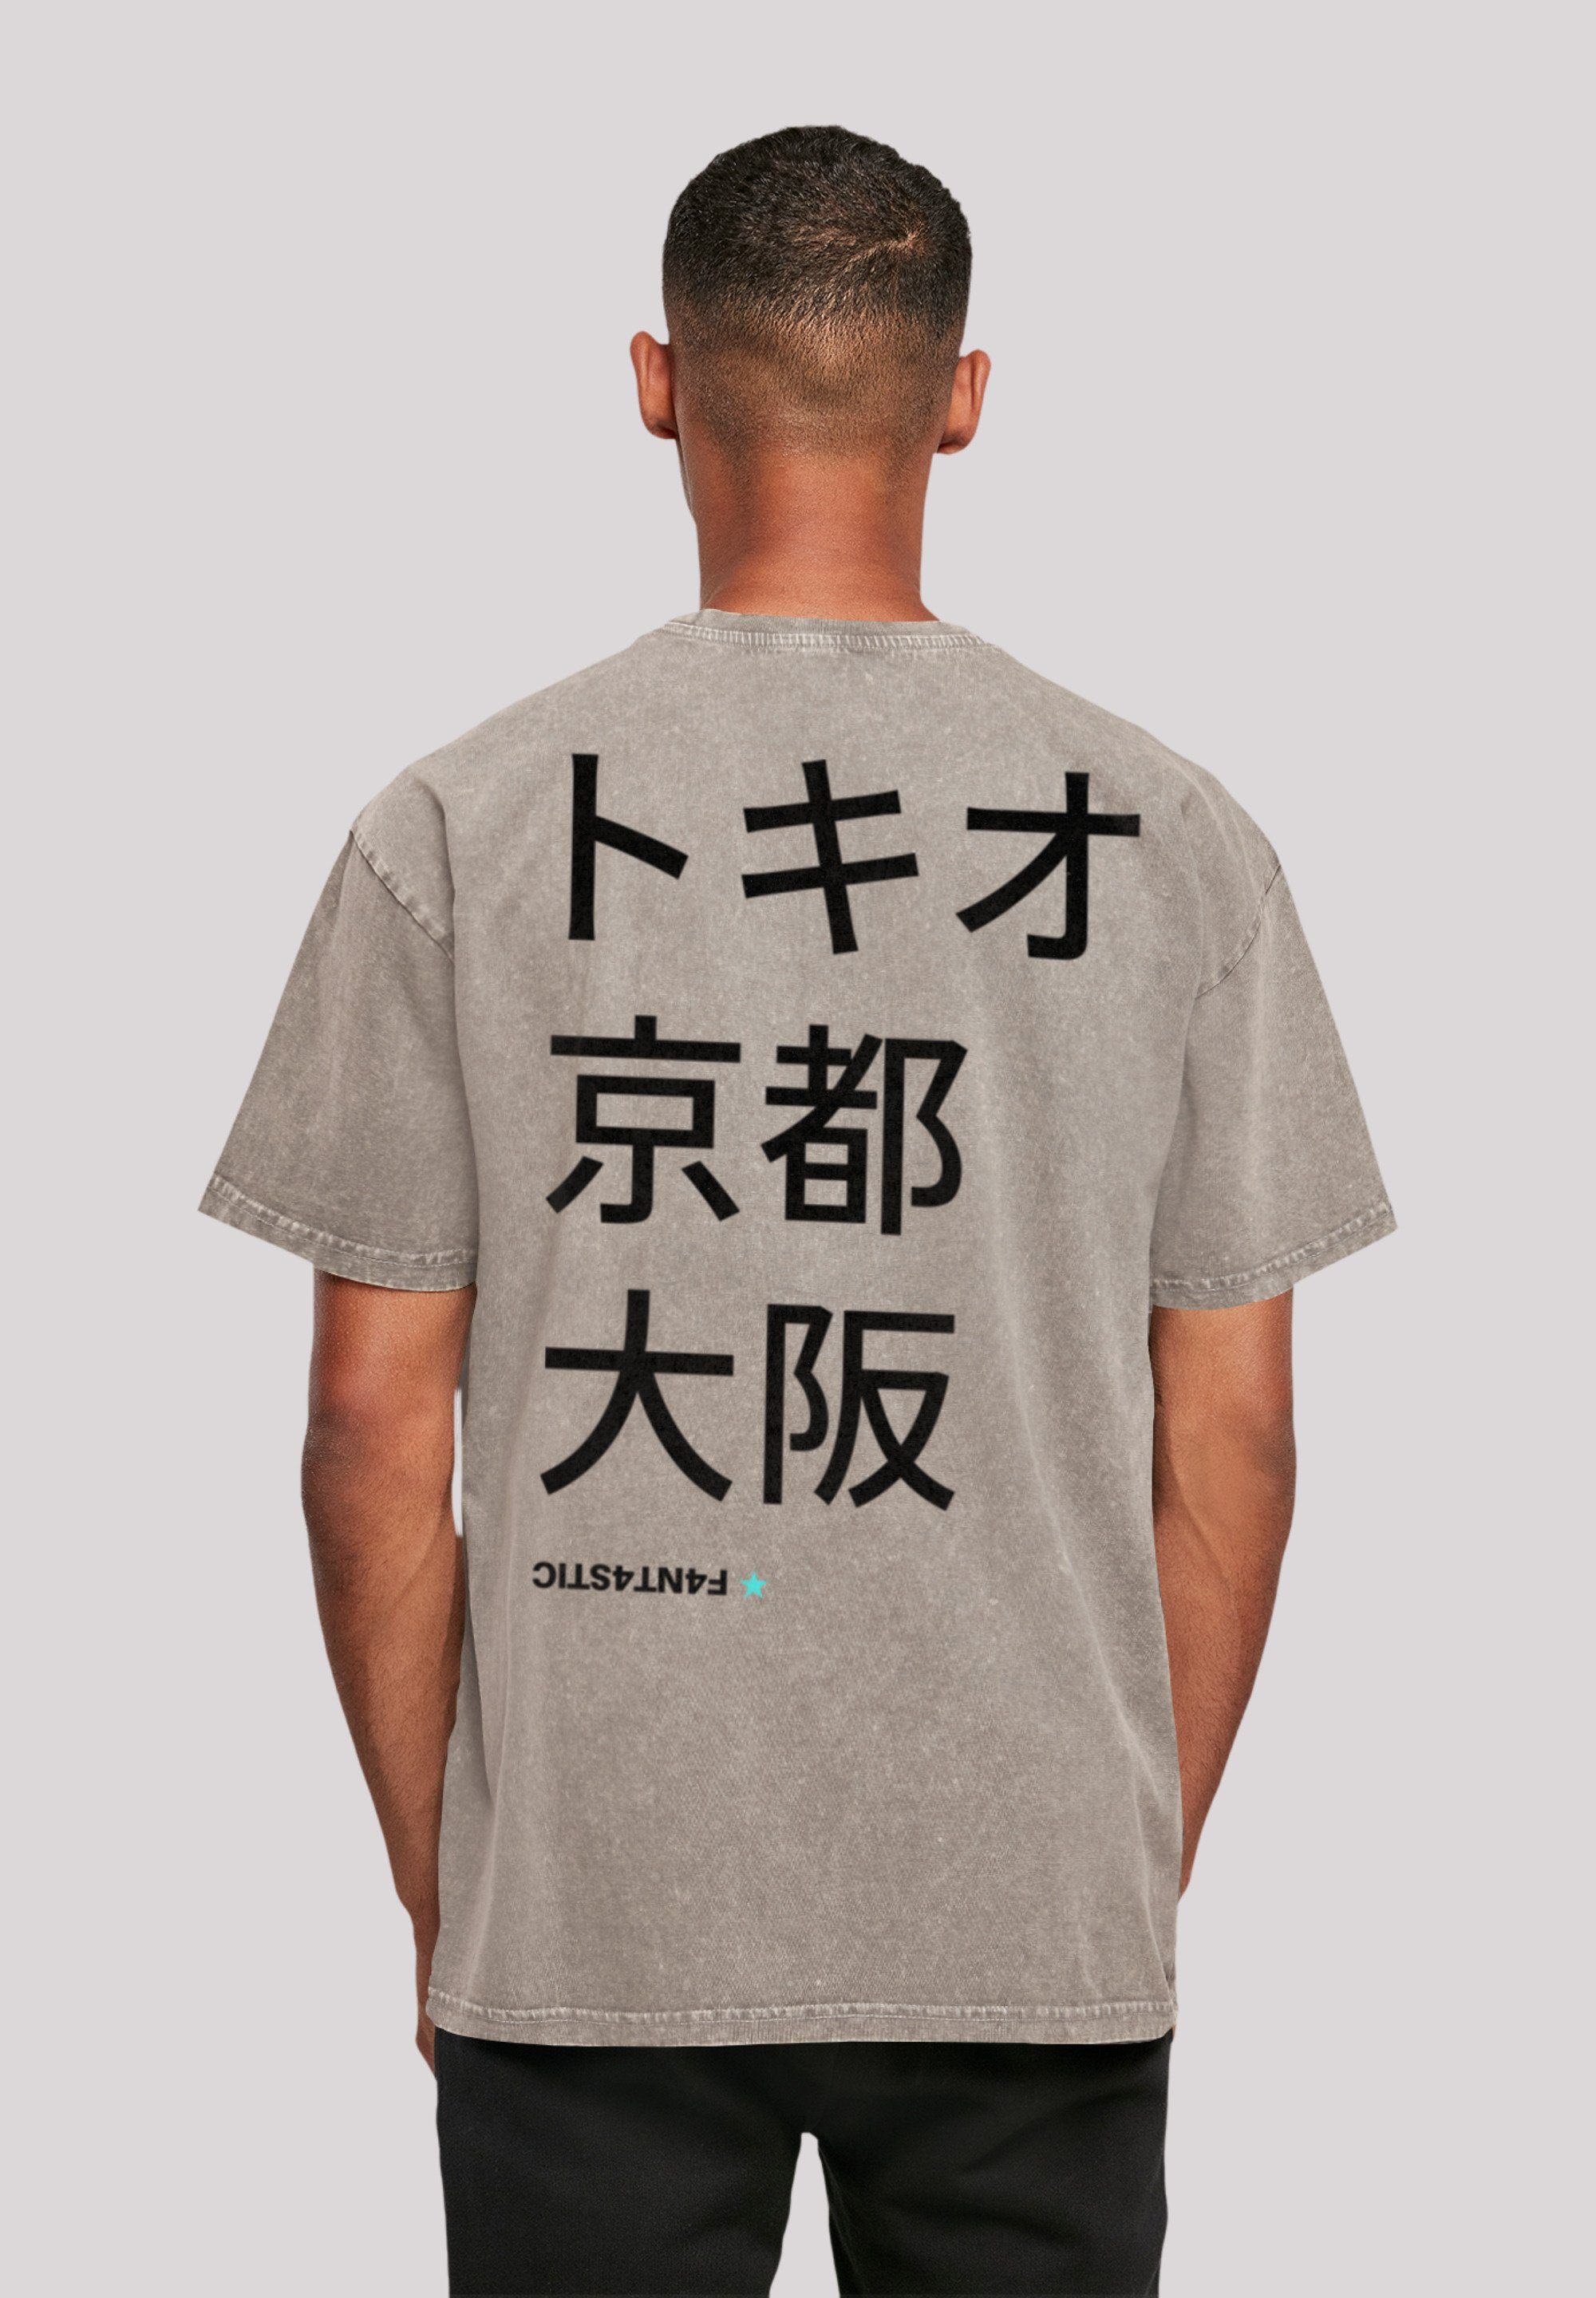 Asphalt Kyoto, Japan T-Shirt Print F4NT4STIC Tokio,